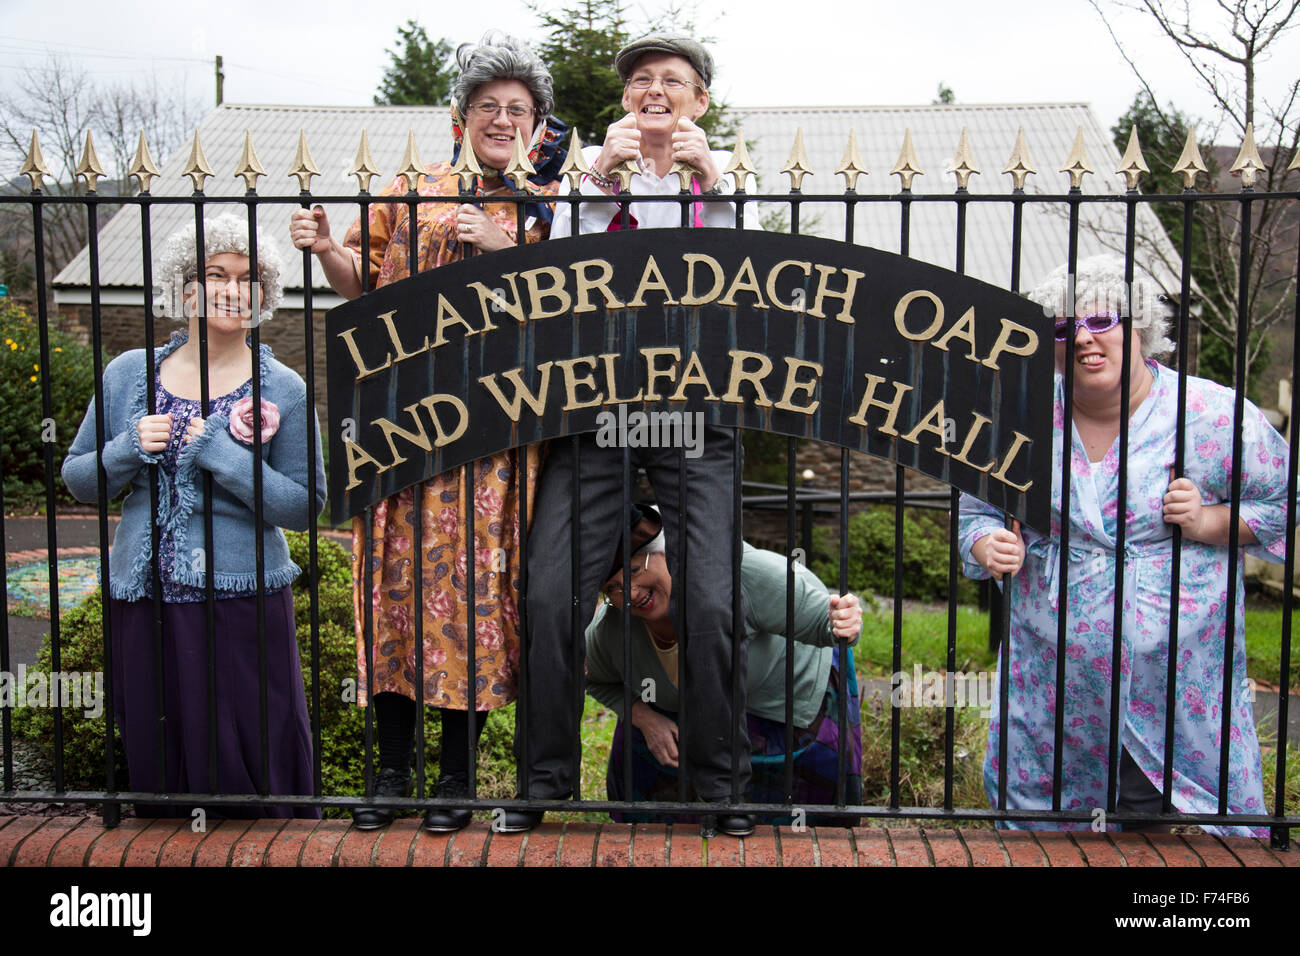 Royaume-uni, Pays de Galles ; 16 novembre 2015. Des femmes habillées comme de vieilles dames posent devant l'Hôtel de bien-être du PAO dans Llanbradach Banque D'Images